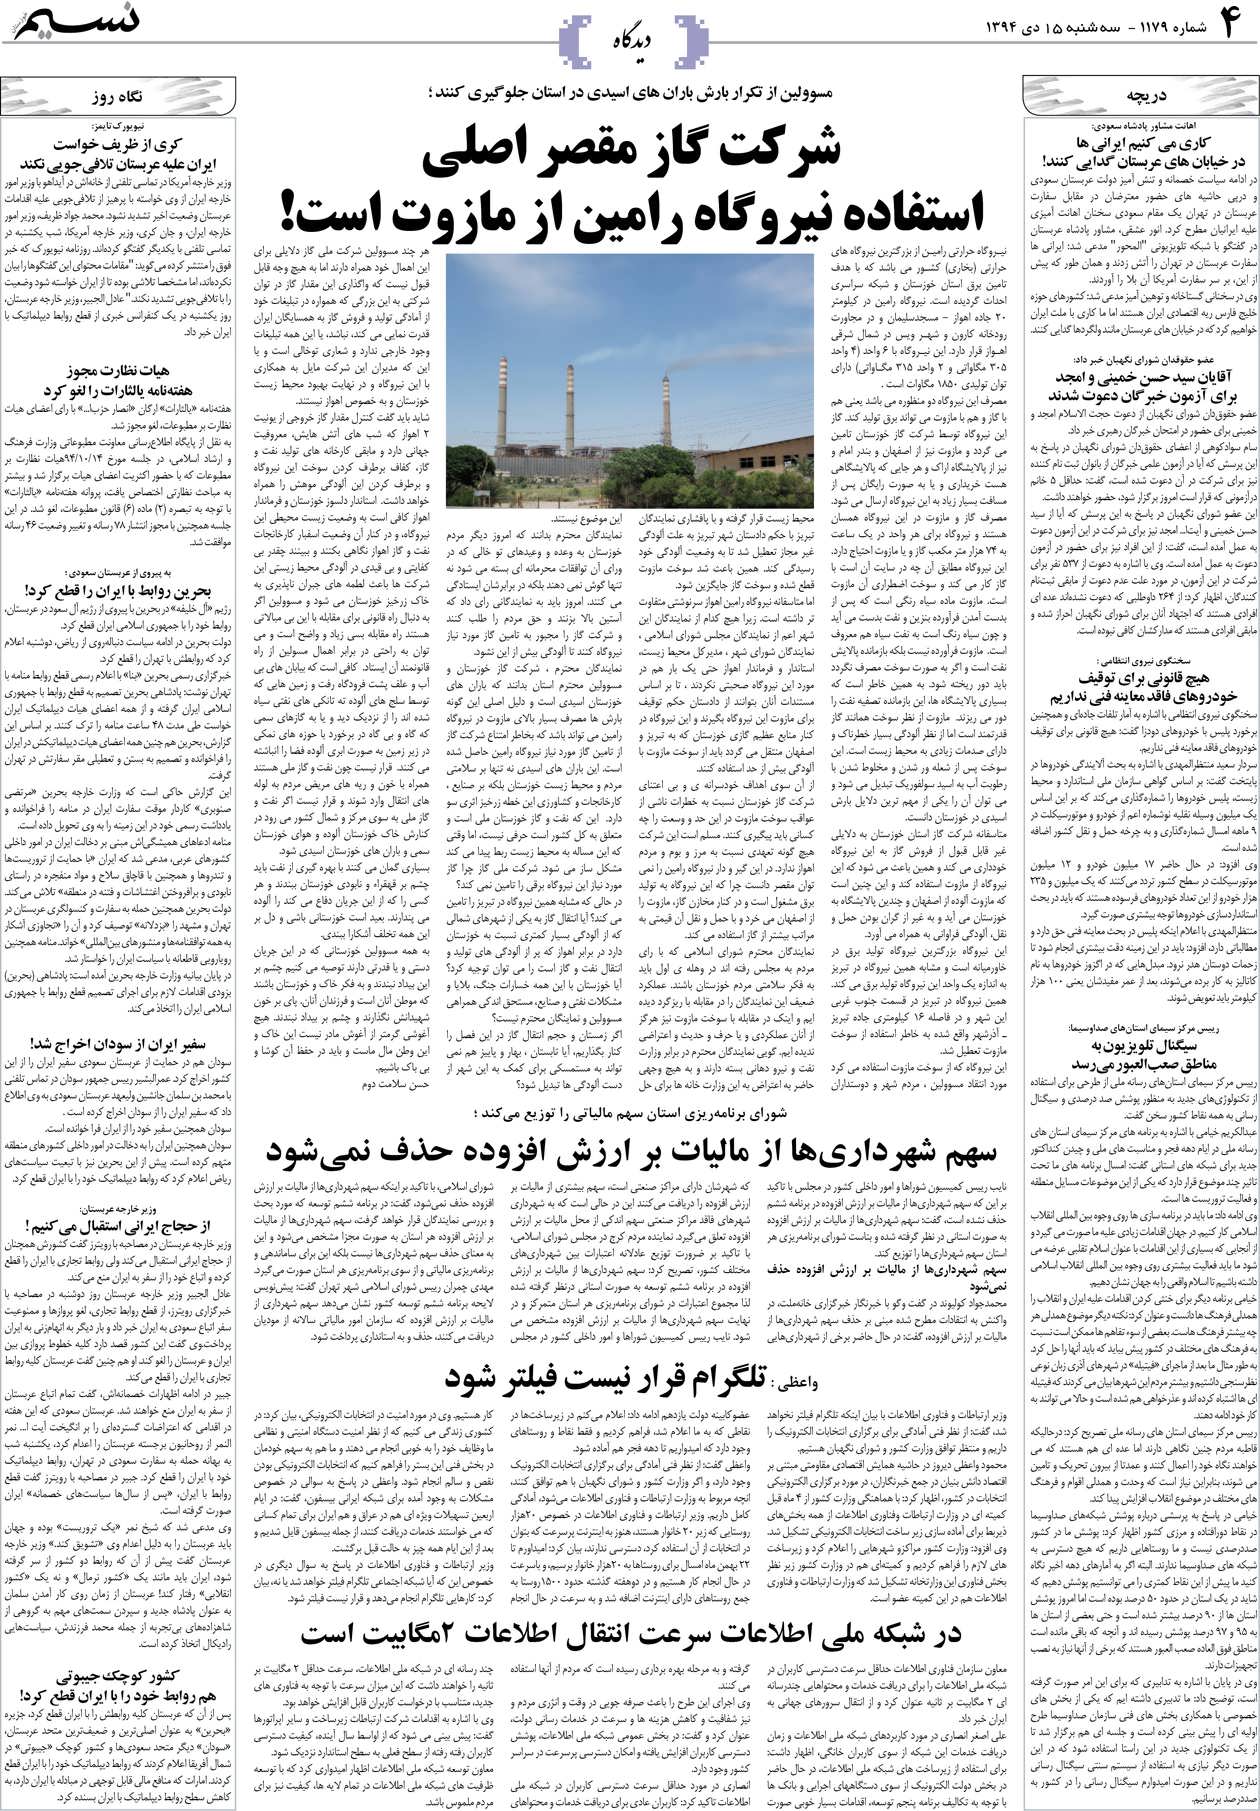 صفحه دیدگاه روزنامه نسیم شماره 1179